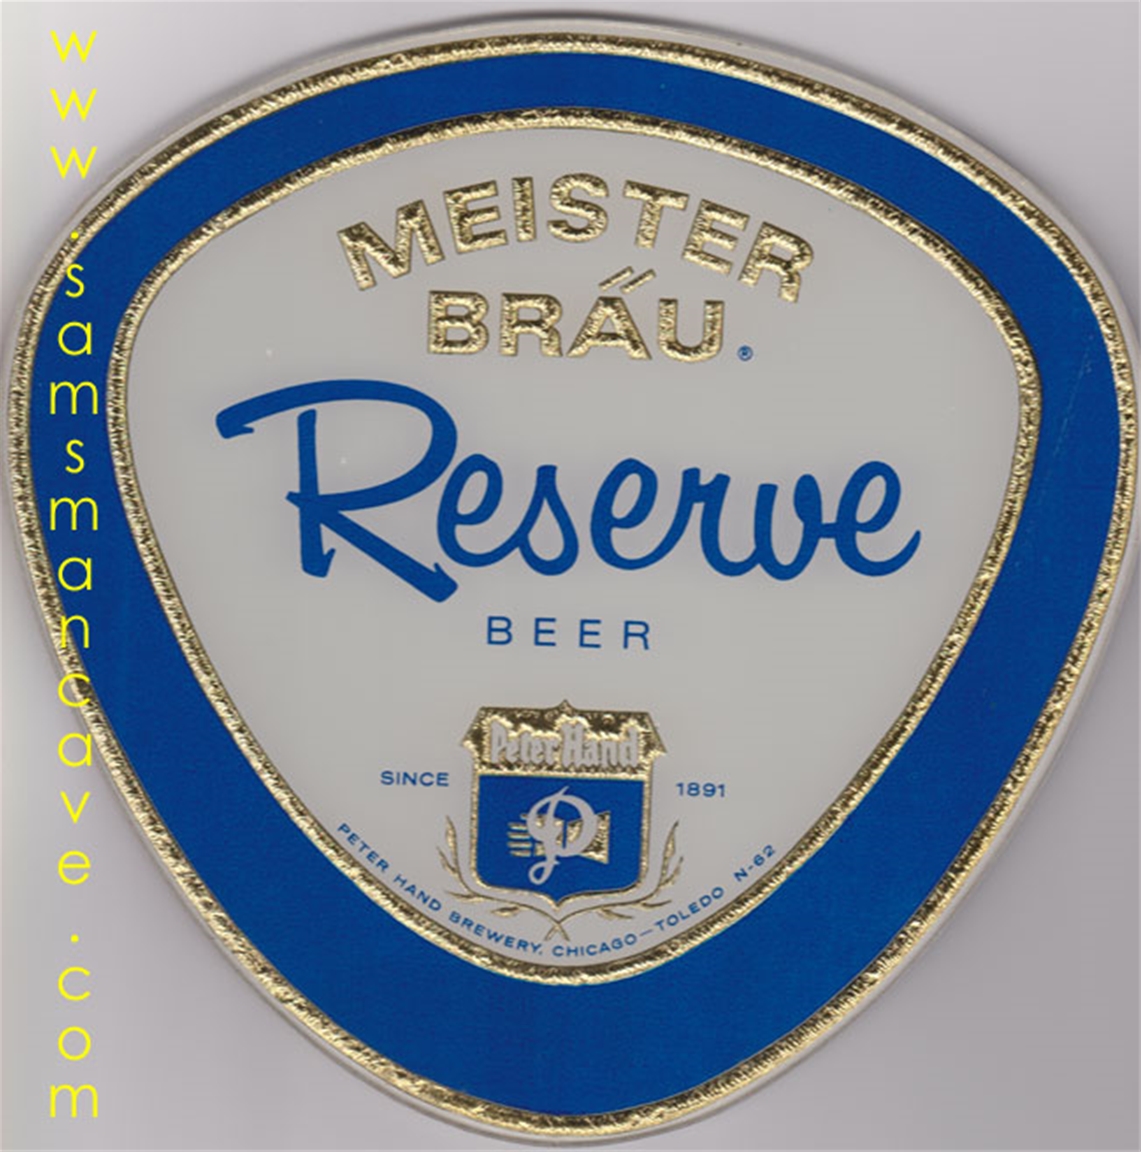 Meister Brau Reserve Beer Mirror